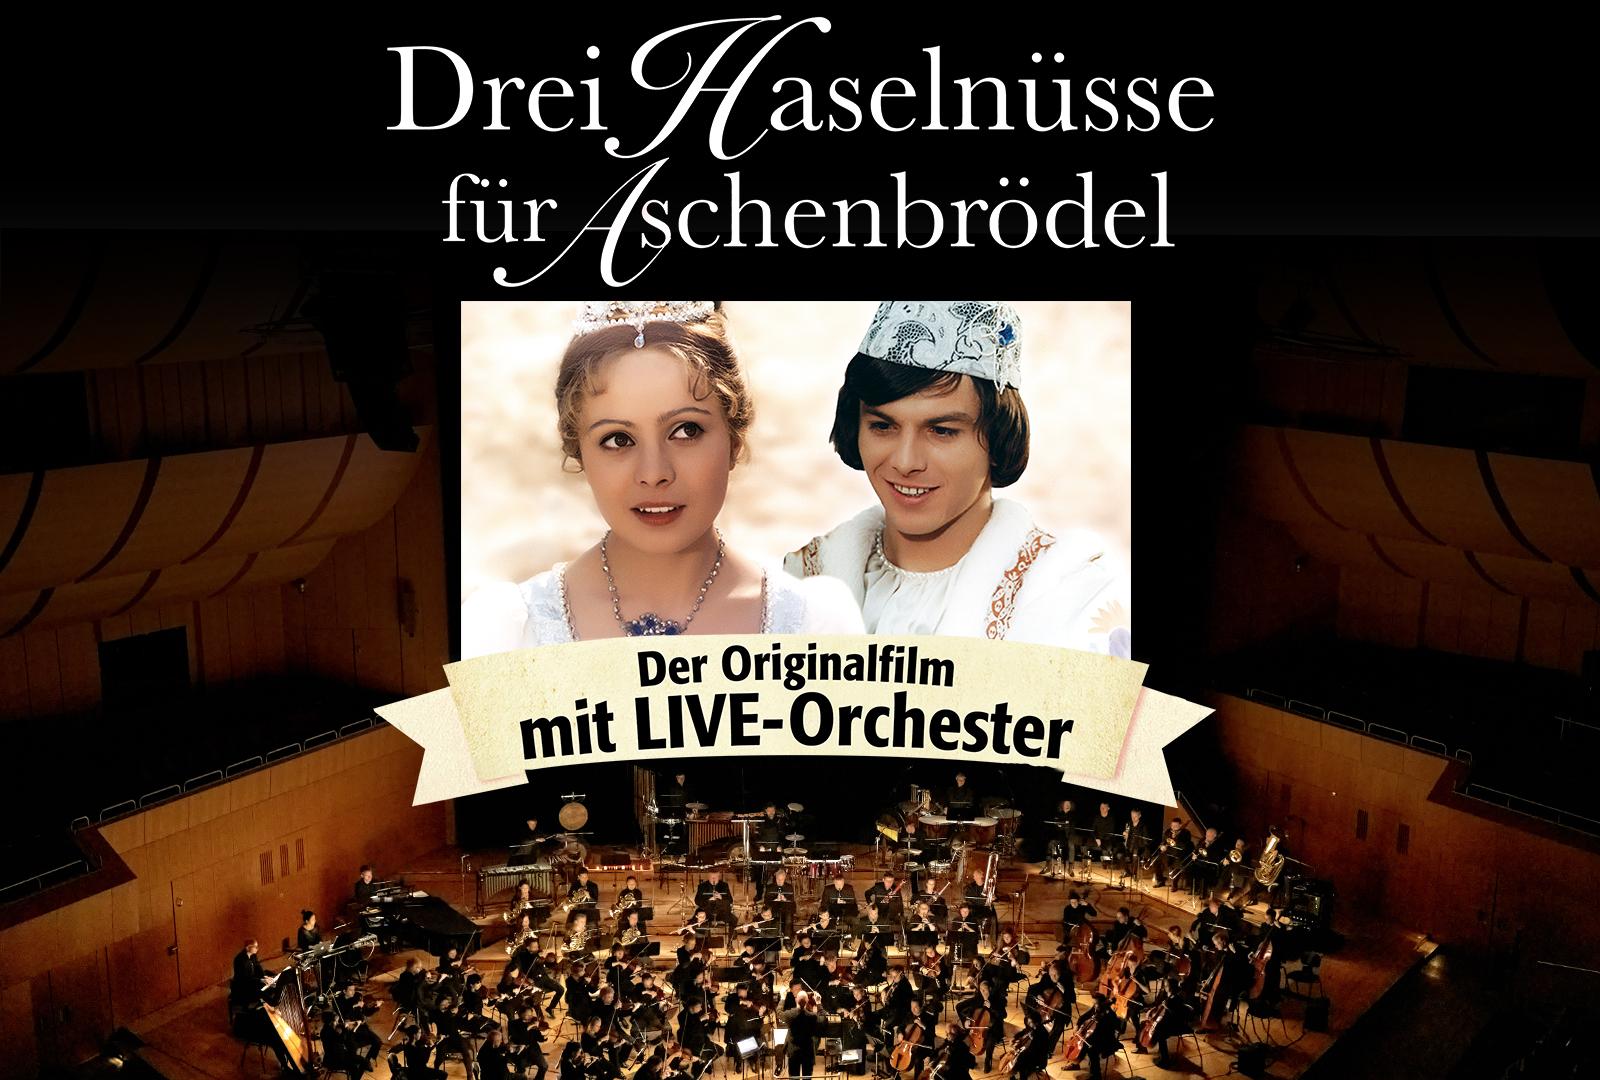 Titelbild und Titel des Films prangen auf einer Fotografie, die ein Symphonieorchester in einem Konzertsaal zeigt.